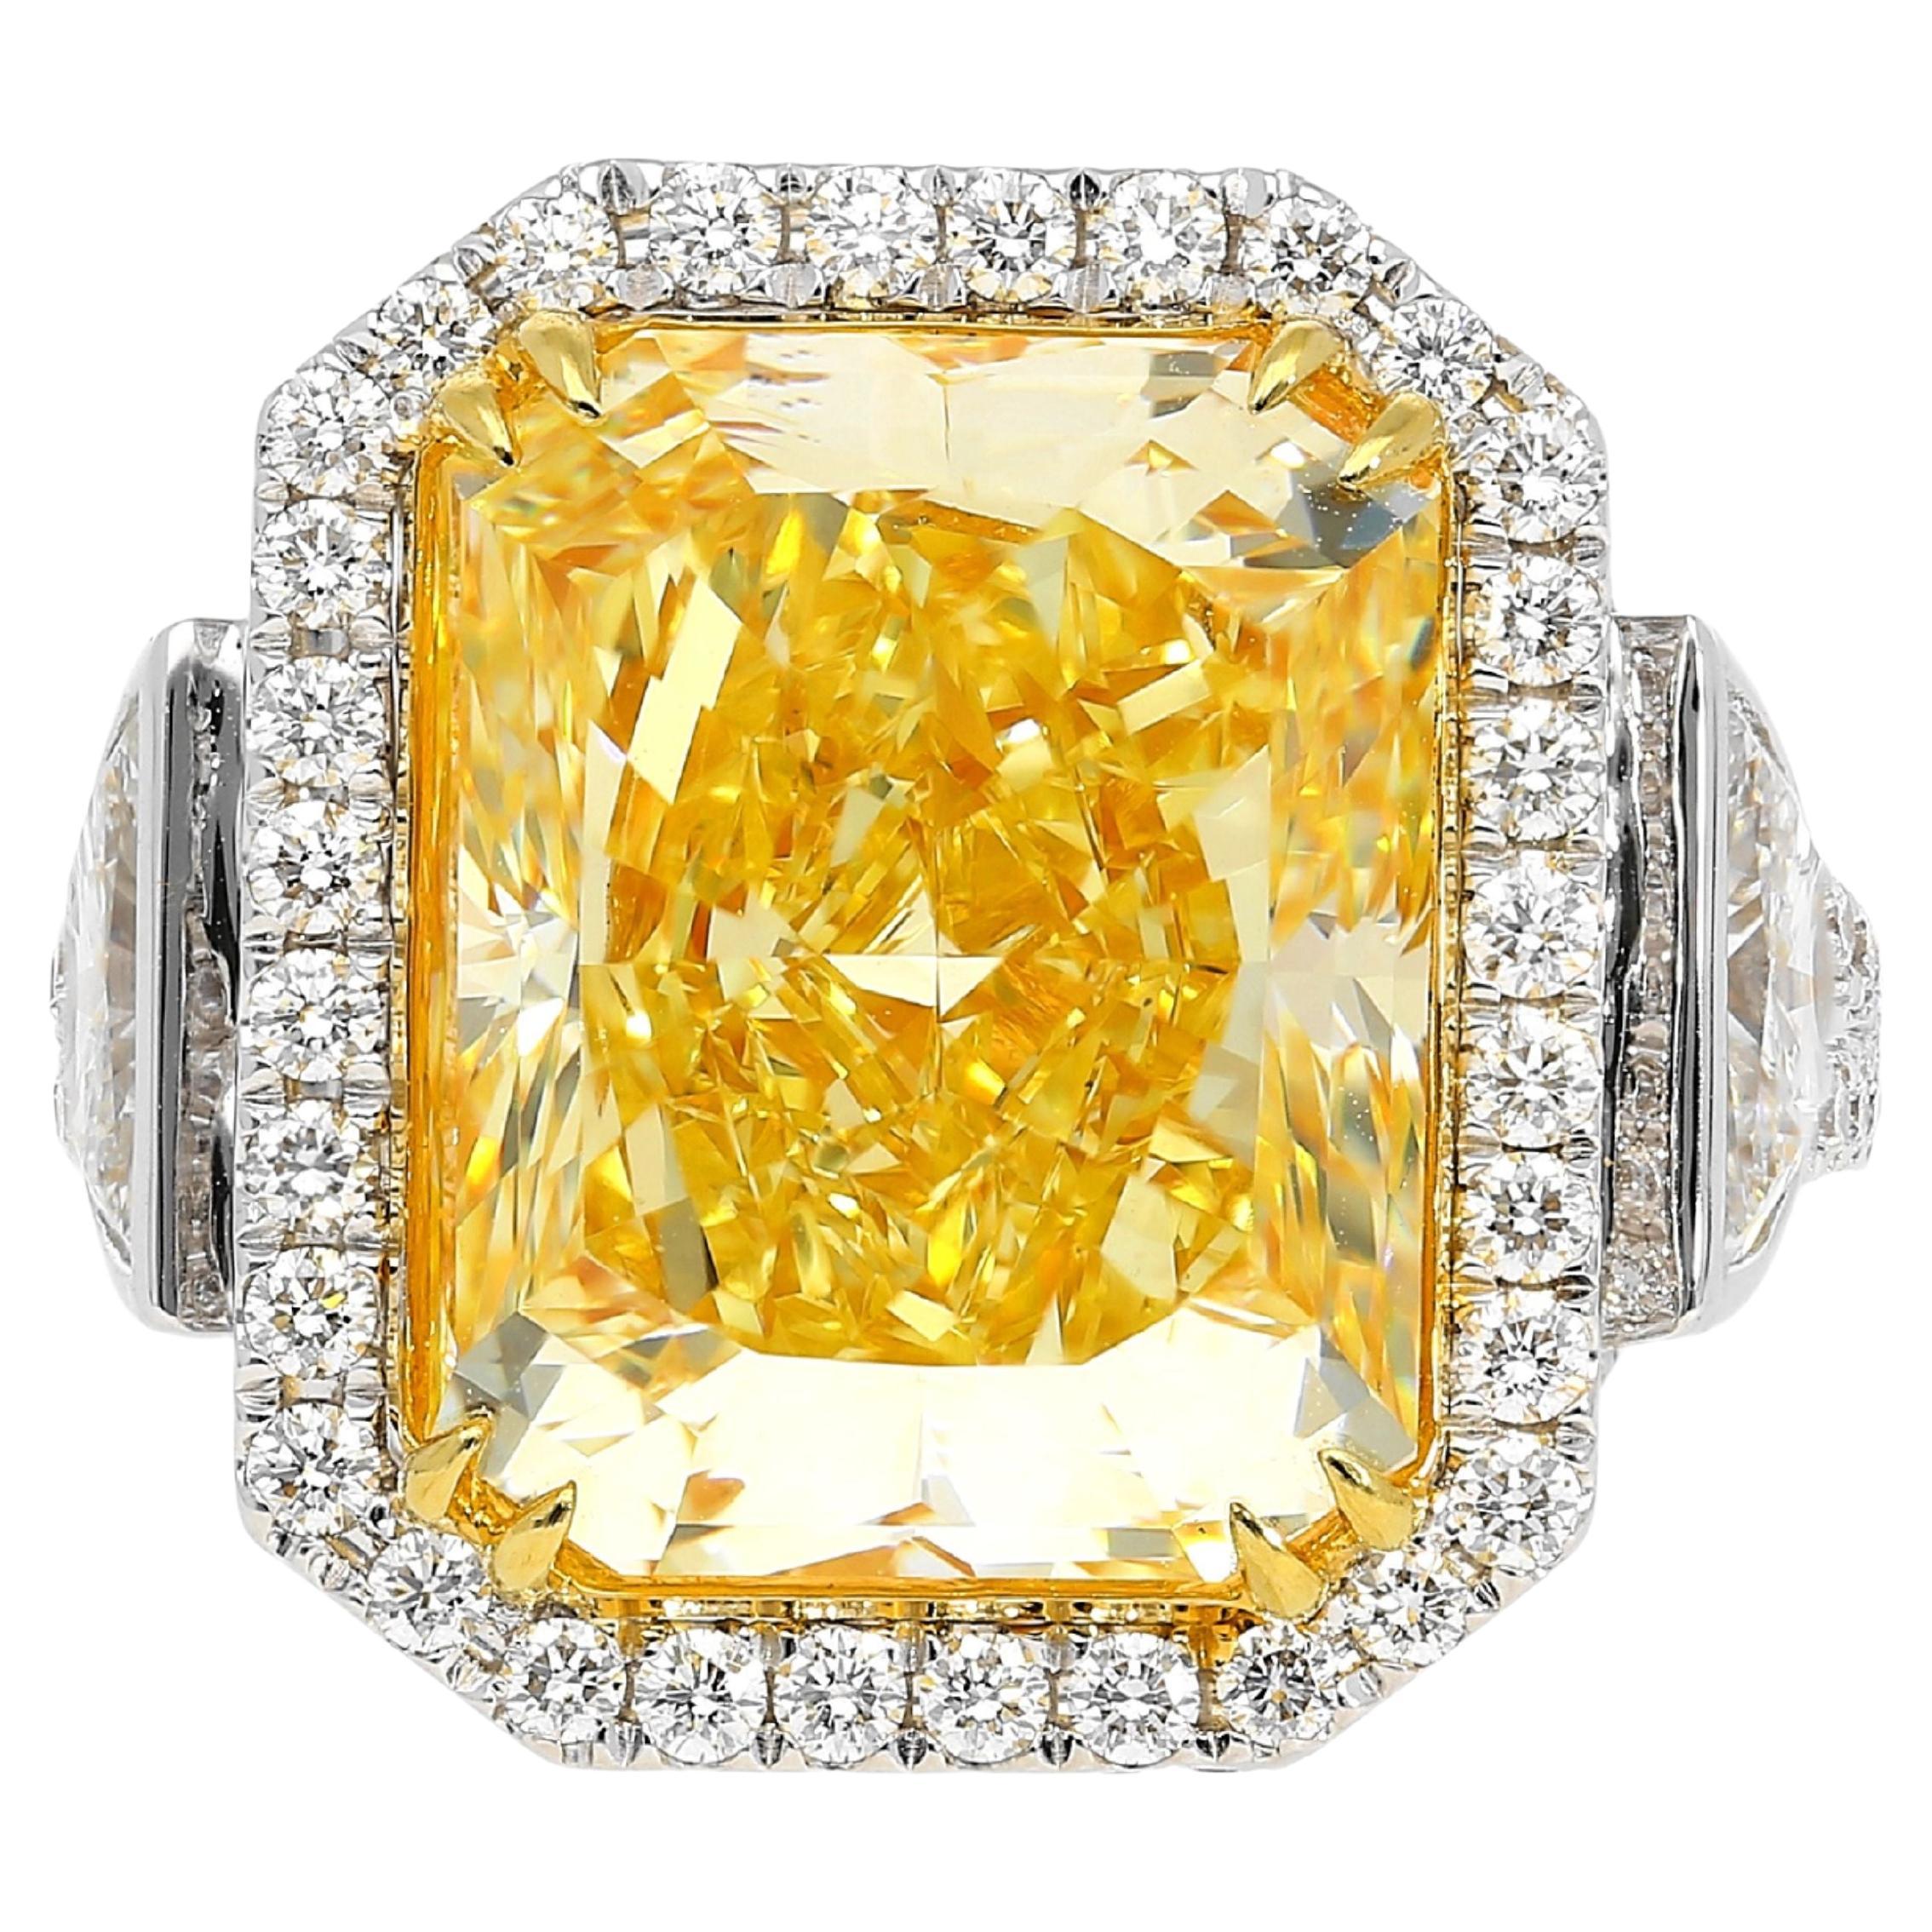 GIA-zertifizierter 10,20 Karat strahlender Fancy-Diamantring mit intensivem Gelb- und Halbmondschliff